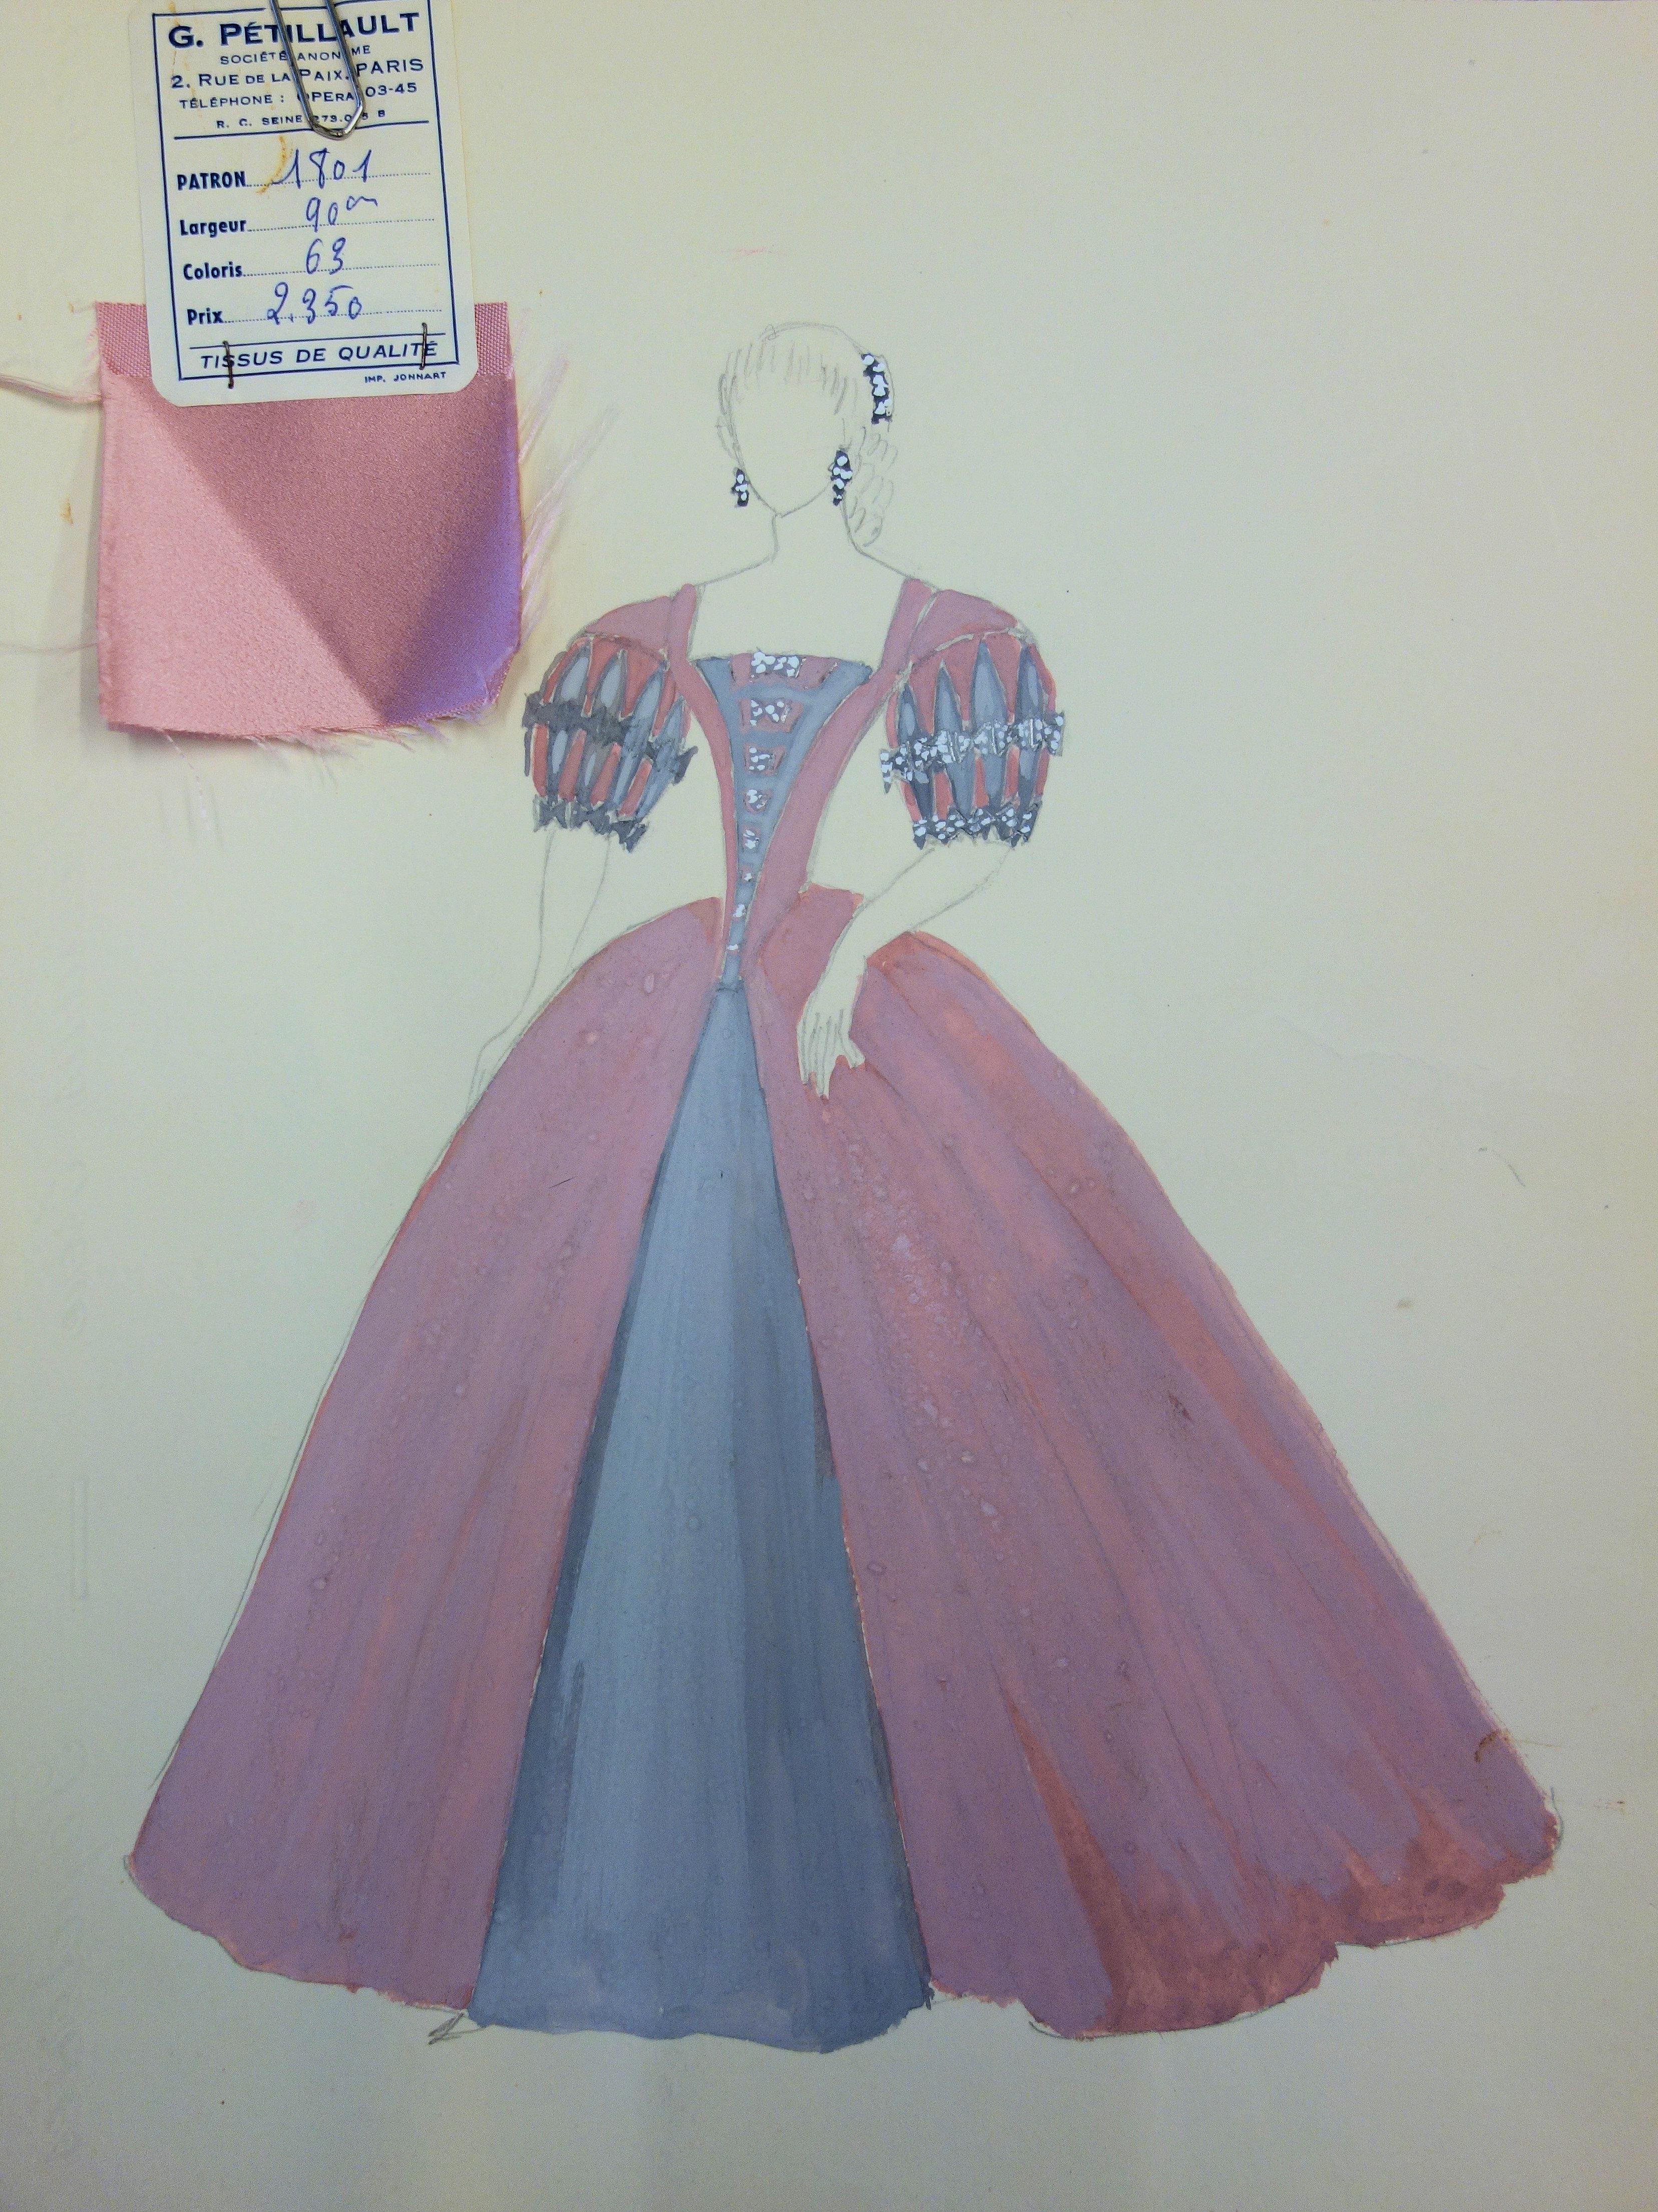 Suzanne Lalique Figurative Art - Ballroom costume - Original pencil and watercolor drawing 